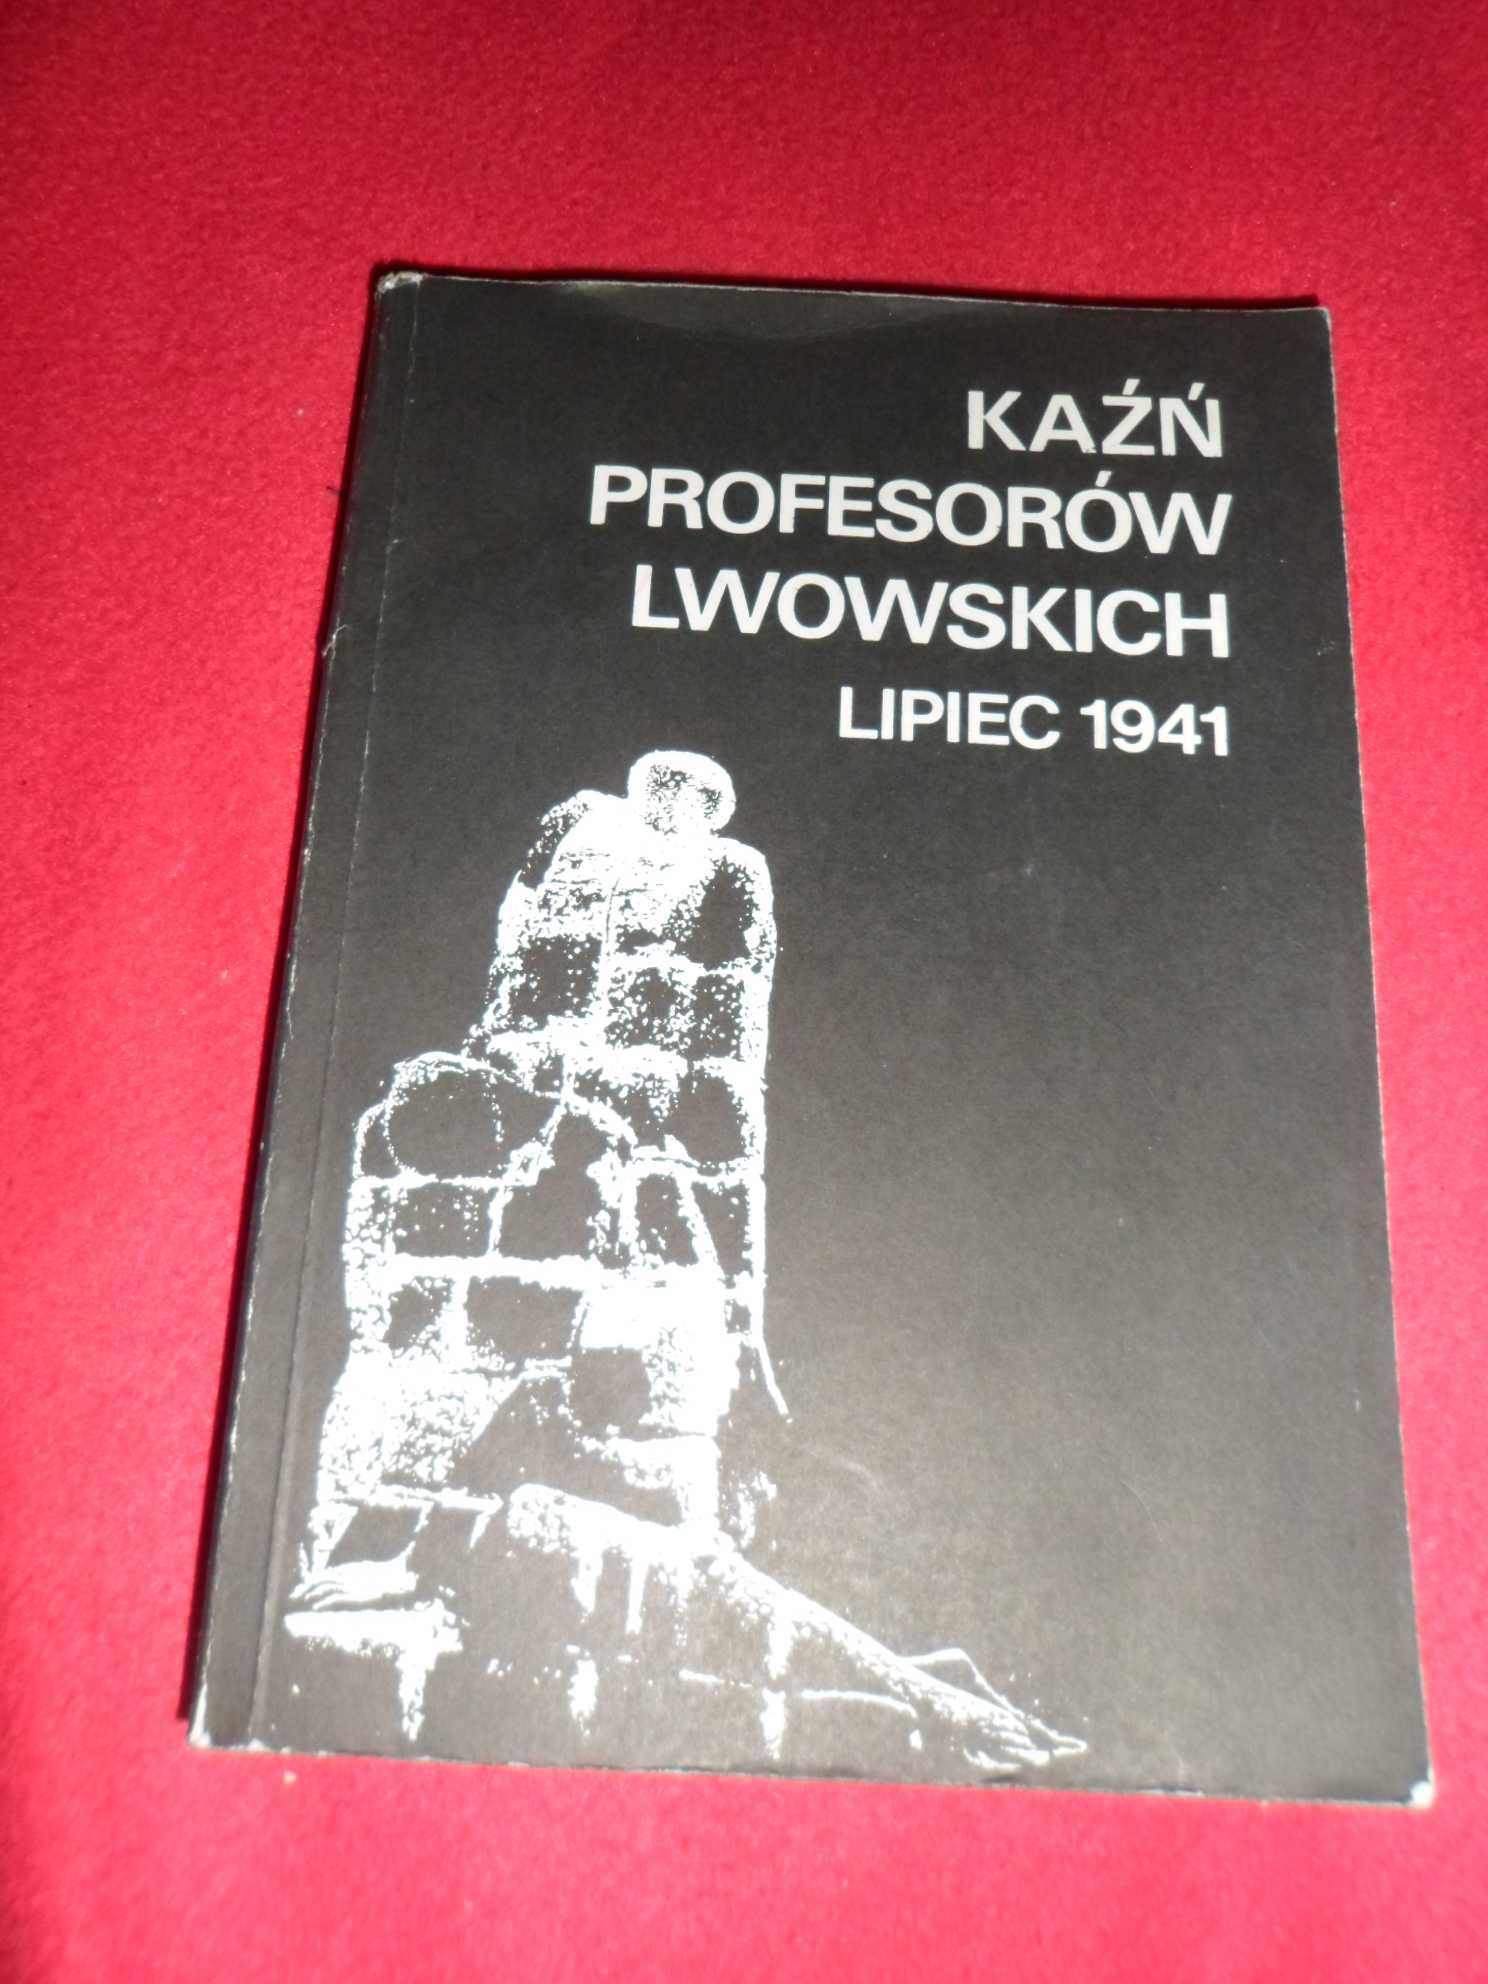 Kaźń Profesorów Lwowskich Lipiec 1941, Studia oraz relacje i dokumenty